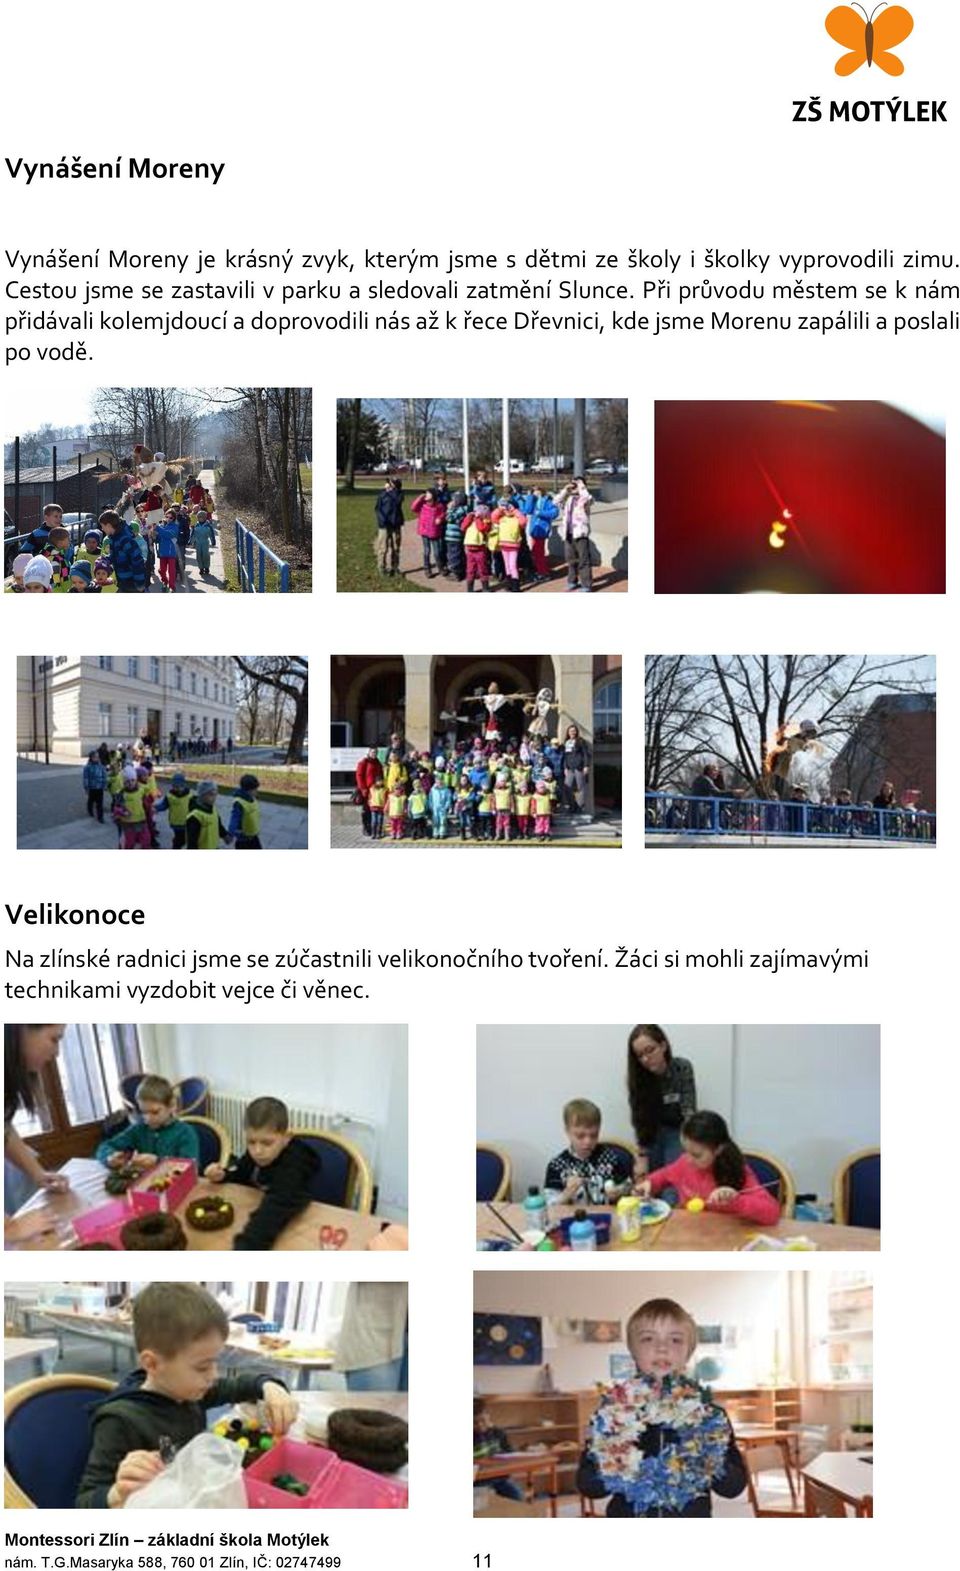 Výroční zpráva Montessori Zlín základní škola a mateřská škola Motýlek -  PDF Free Download